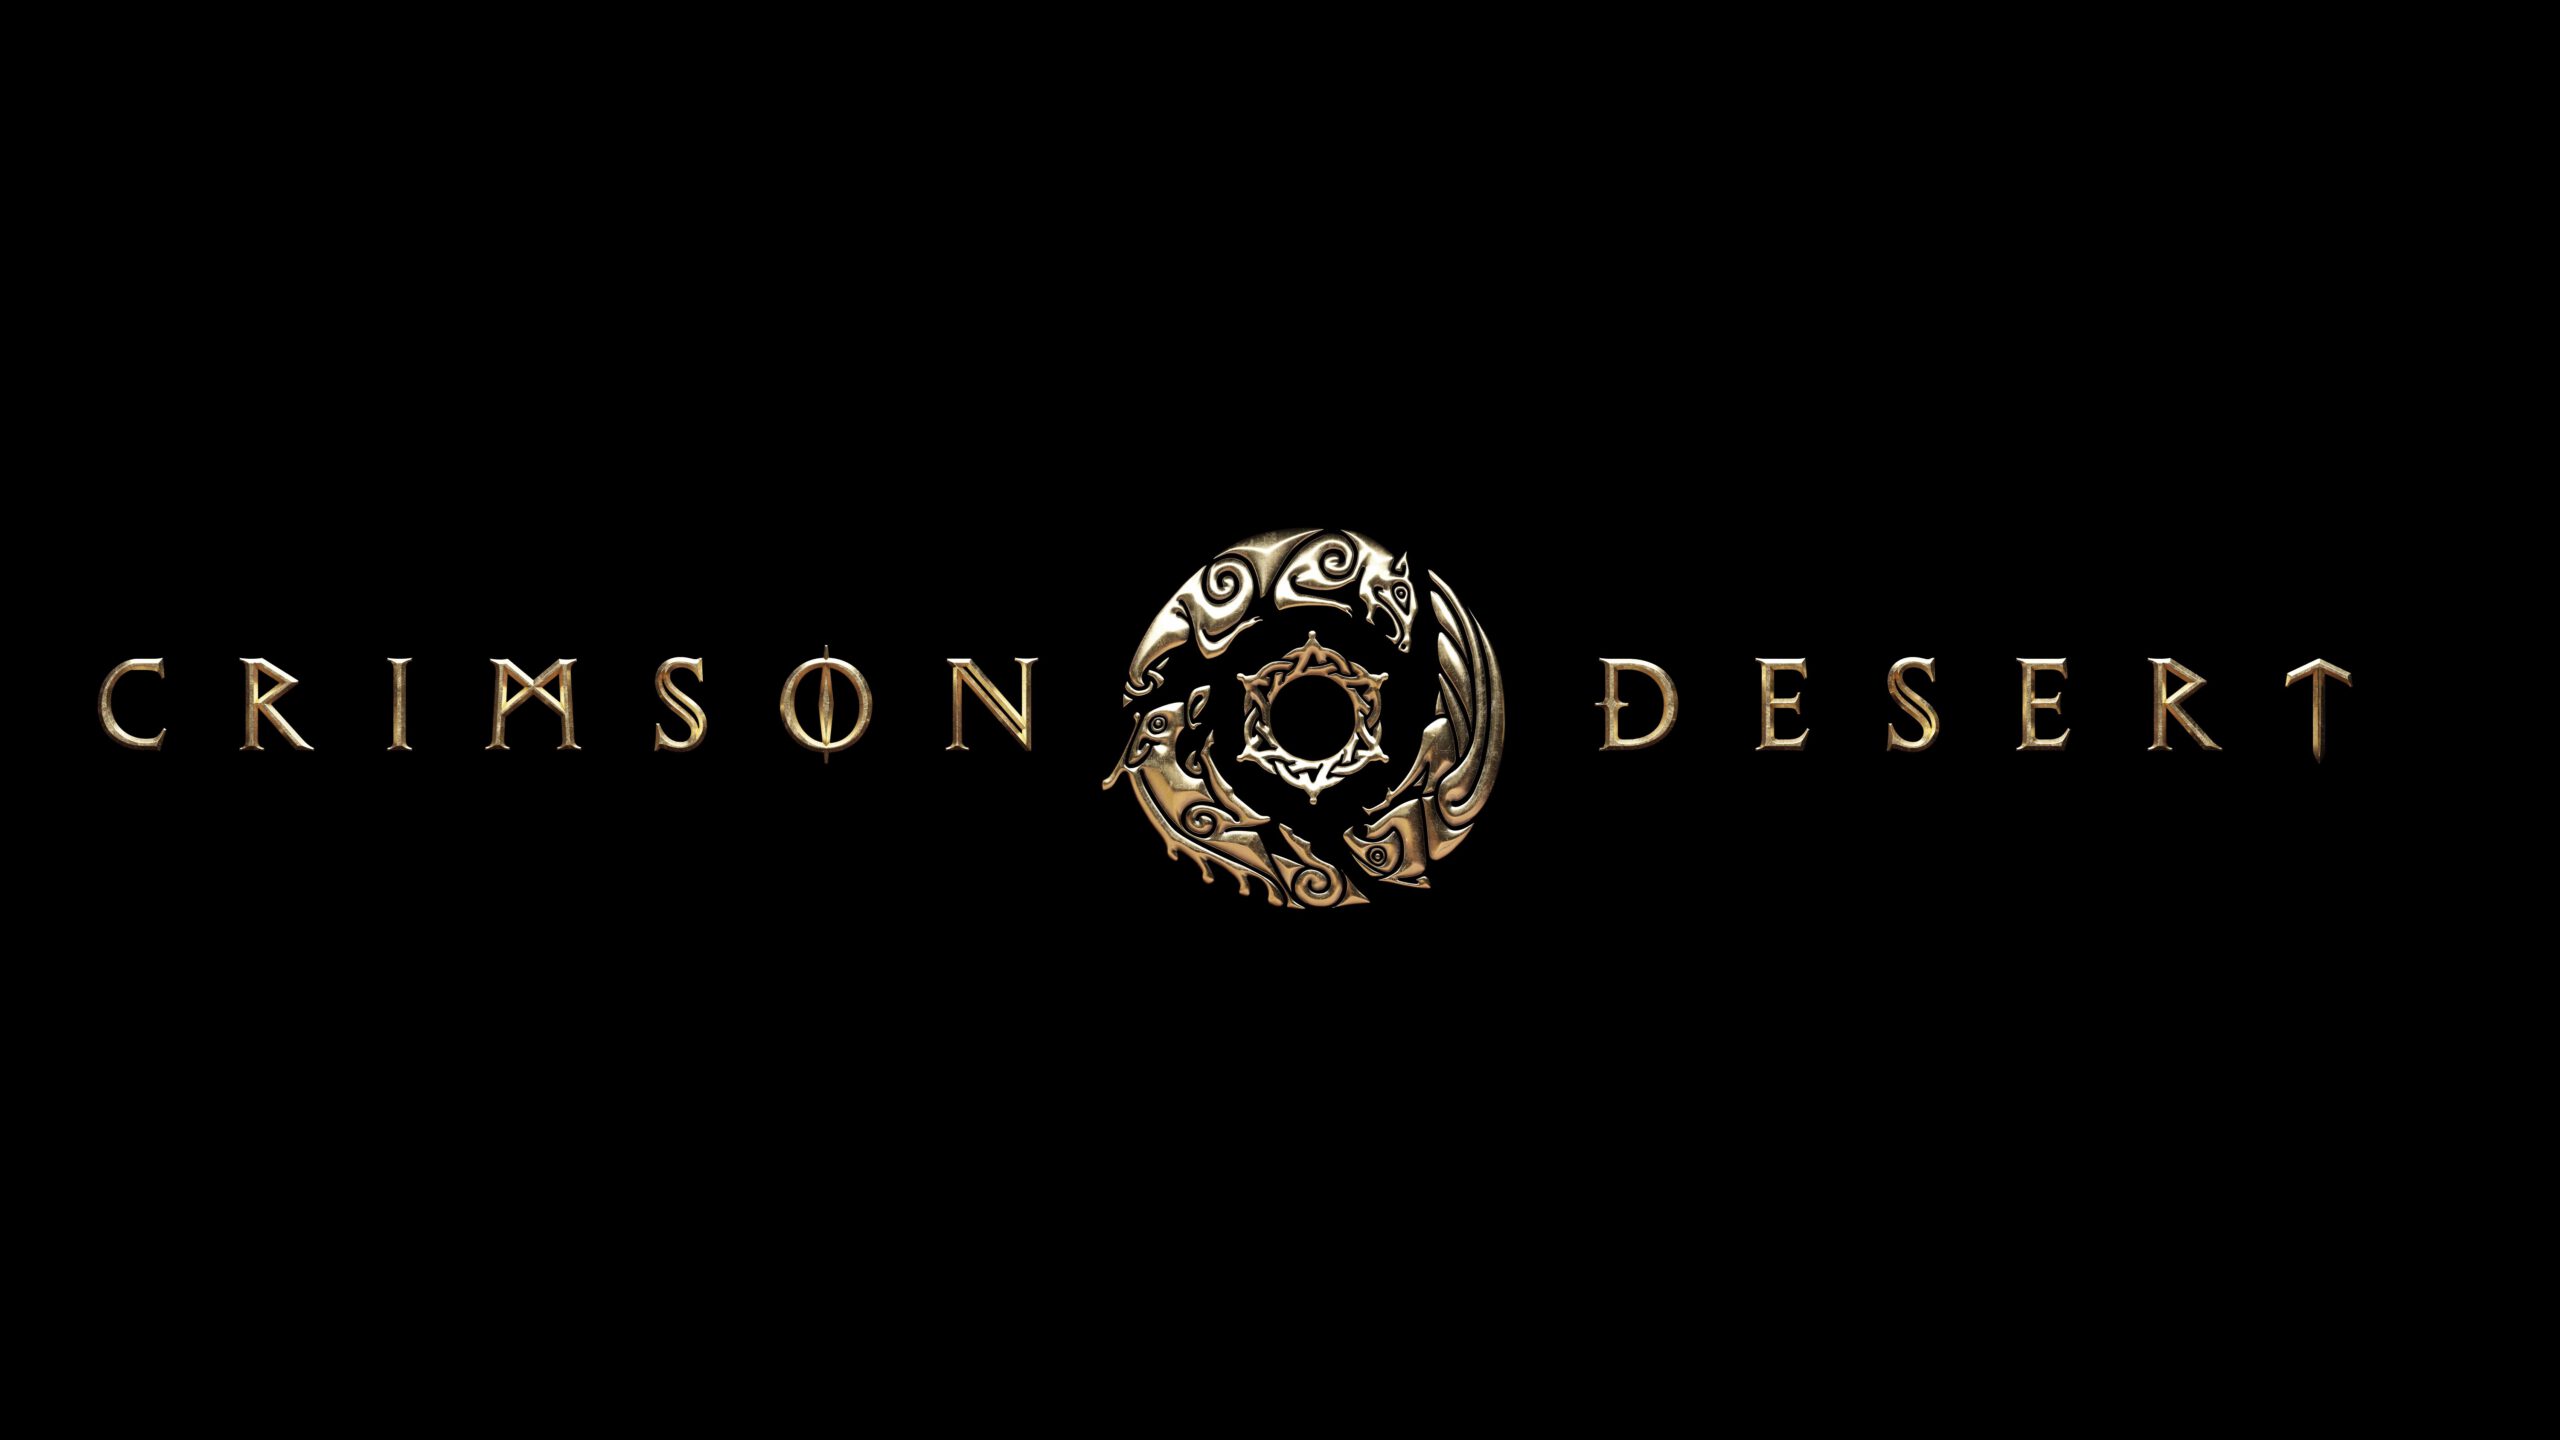 บริษัท Pearl Abyss เผยวิดีโอตัวอย่างเกมใหม่ล่าสุด “Crimson Desert” ภายในงาน The GAME AWARDS